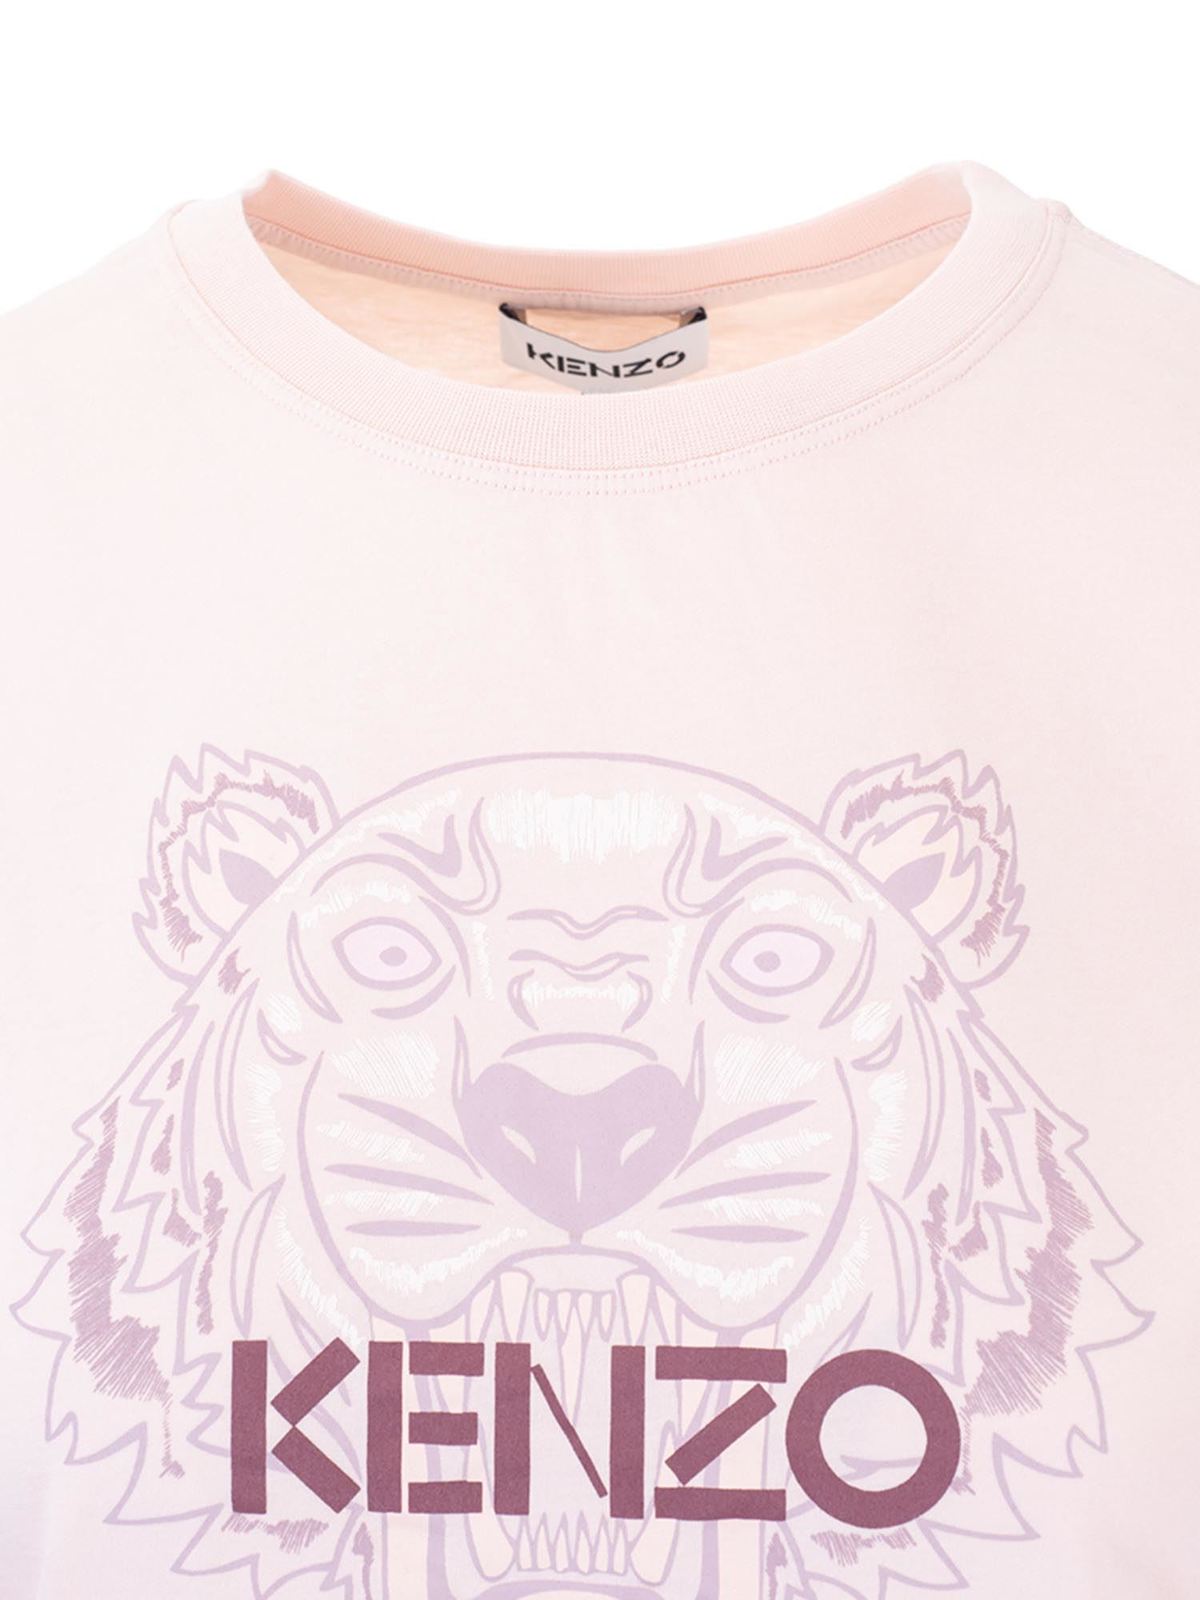 kenzo pink shirt